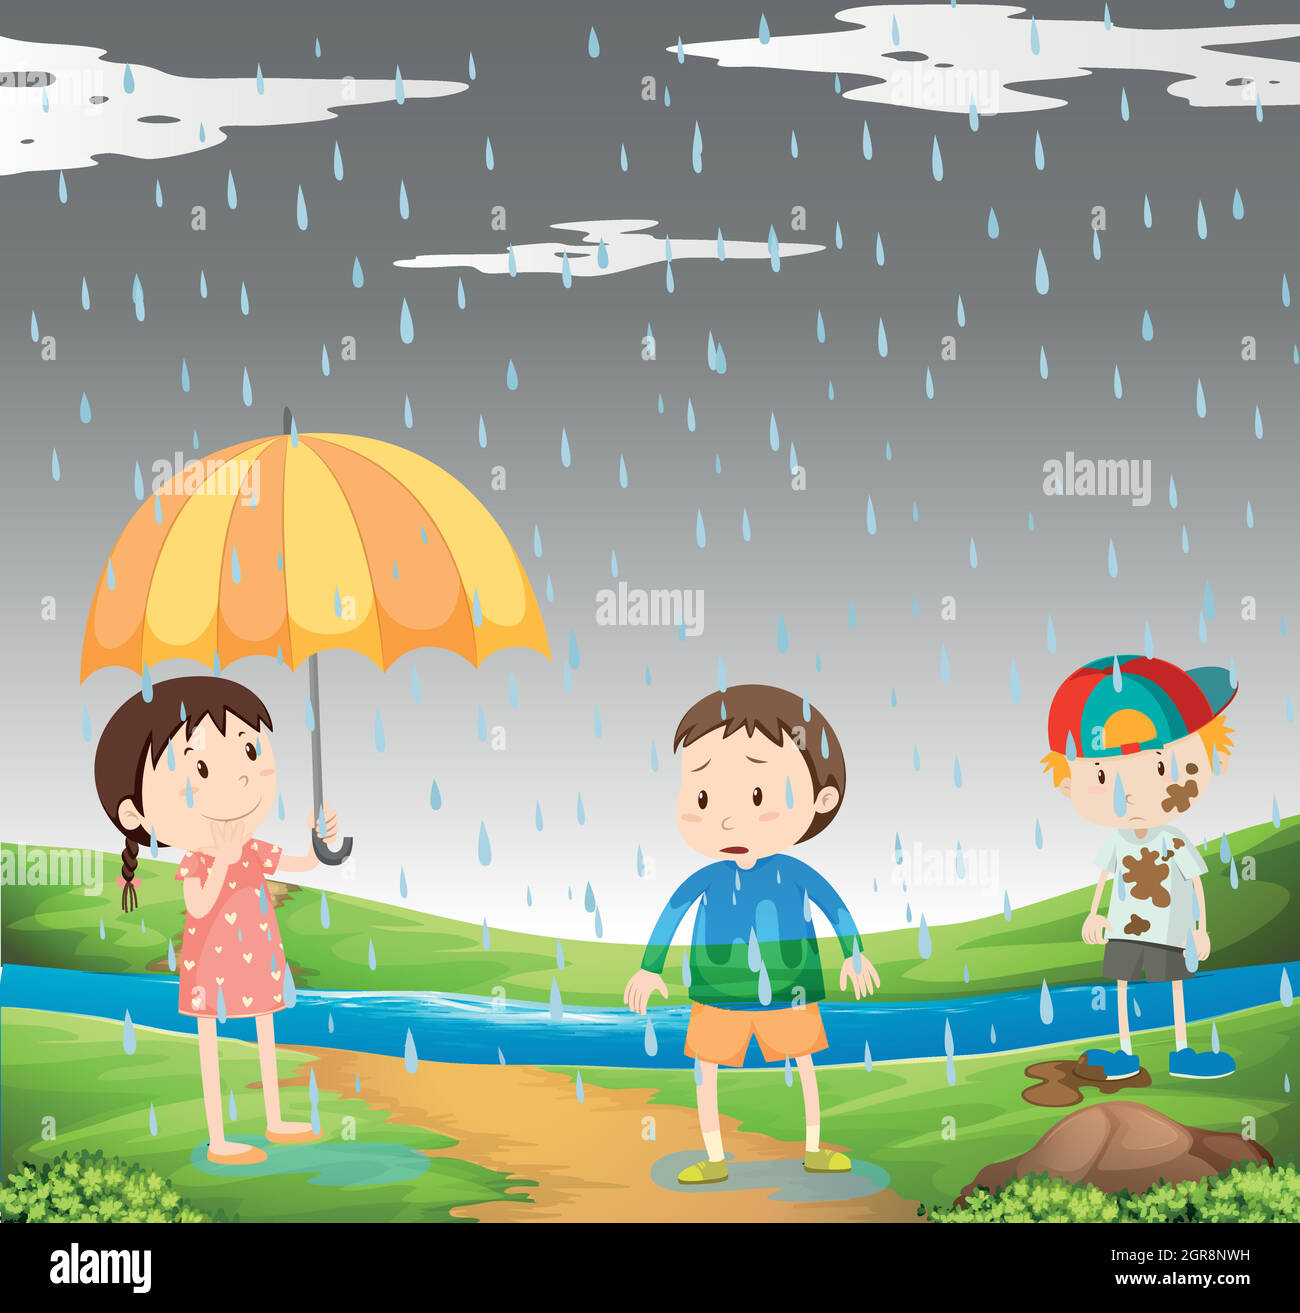 Rain in the garden Stock Vector Images - Alamy